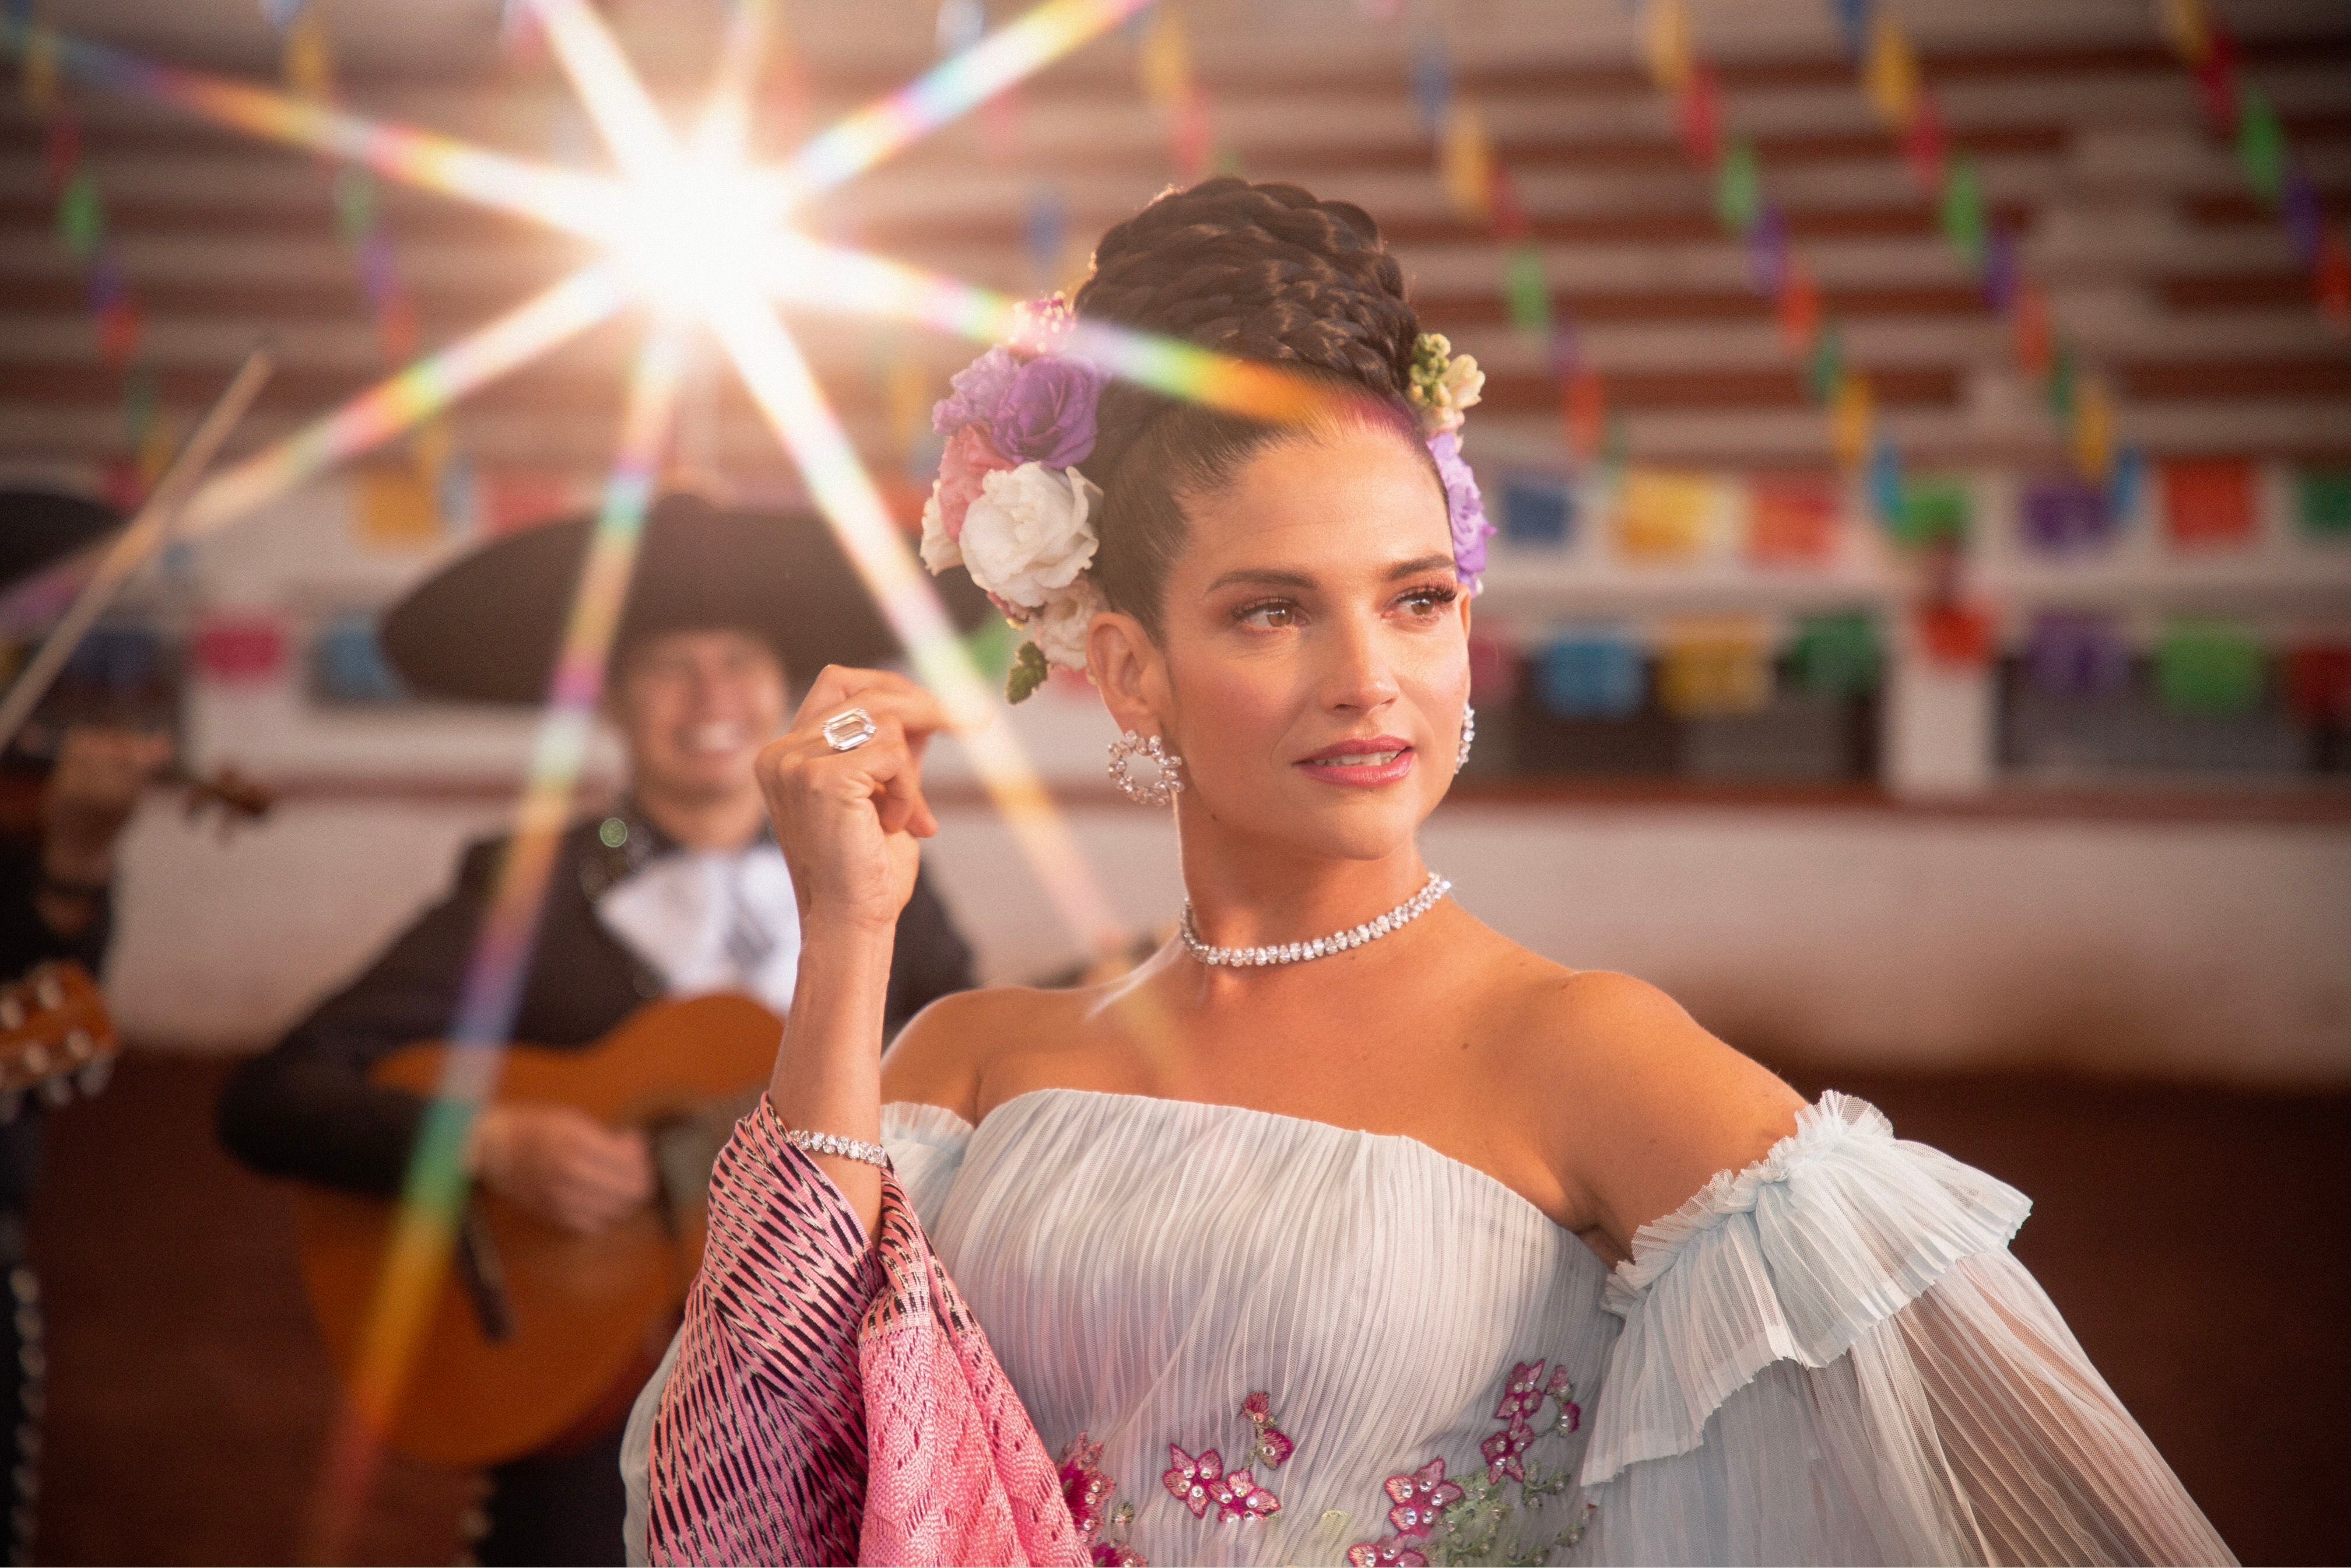 La música regional mexicana es una de las más grandes pasiones de la cantante Natalia Jiménez.  Ella aprovechará su concierto en Costa Rica para interpretar algunos temas en este género.